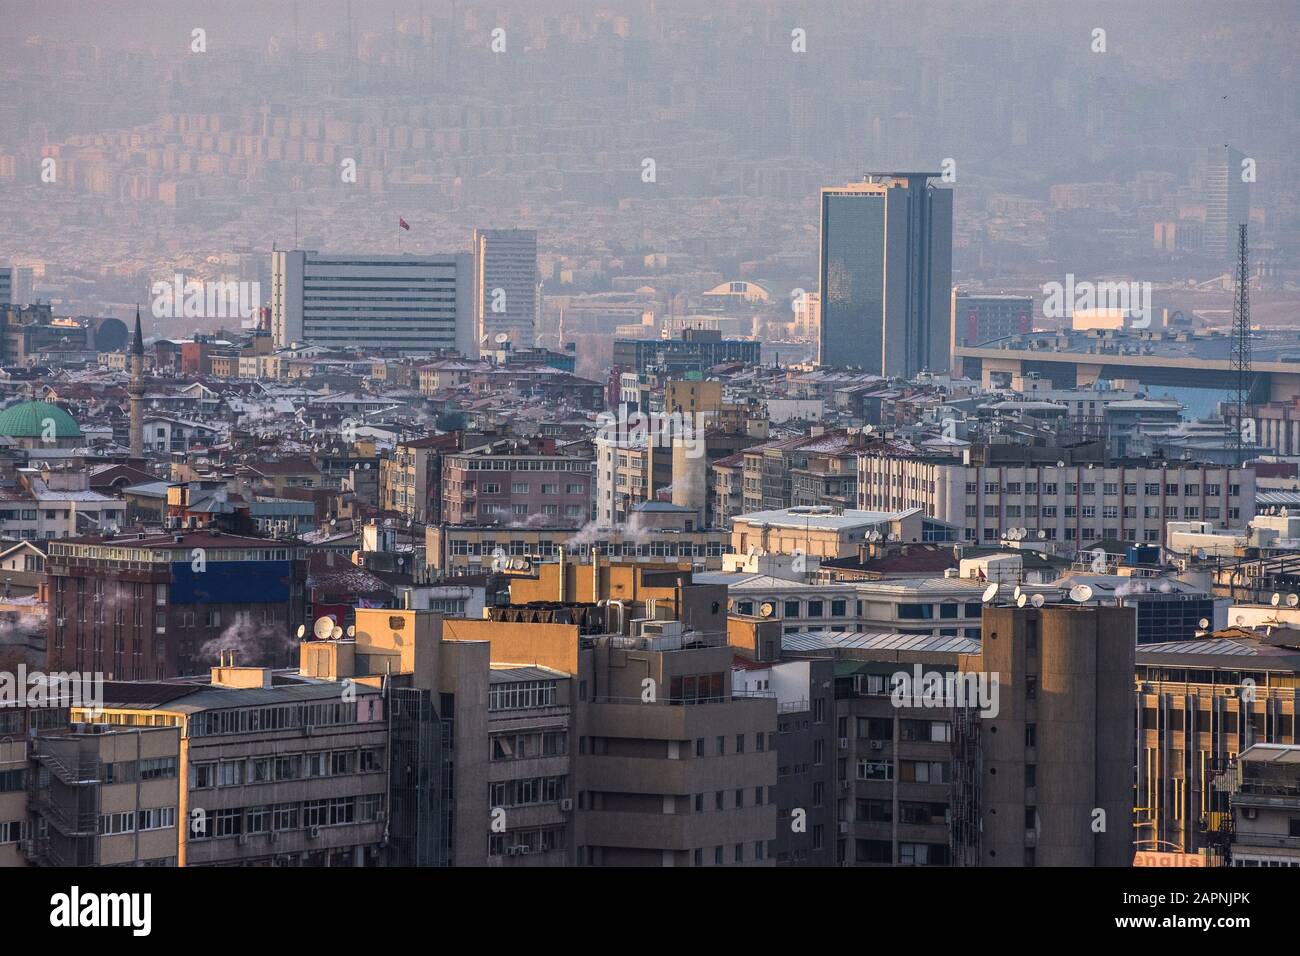 Ankara, Capital city of Turkey Stock Photo